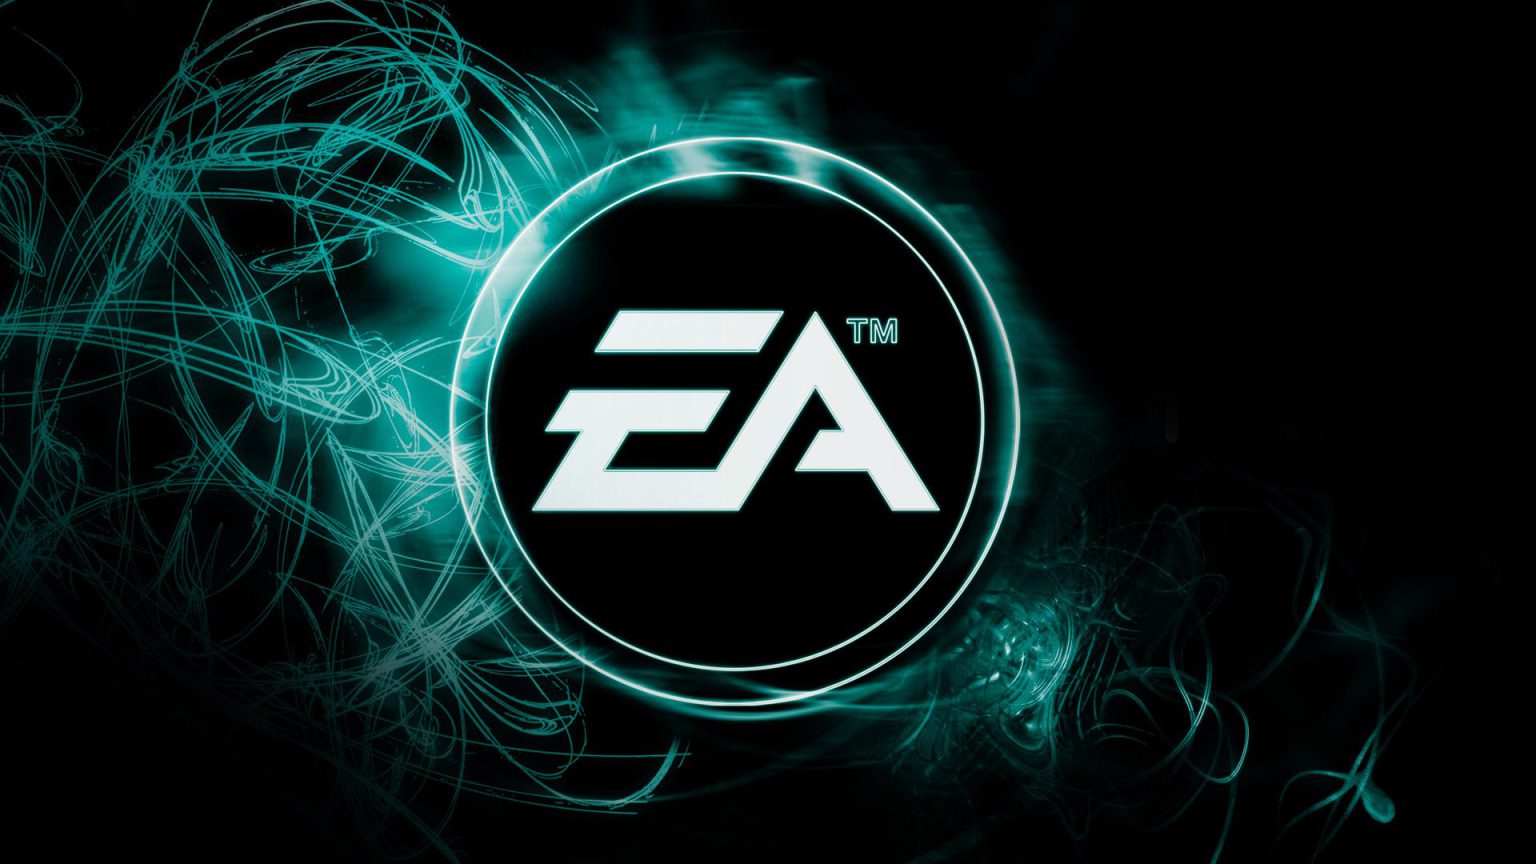 EA - Electronic Arts - GX